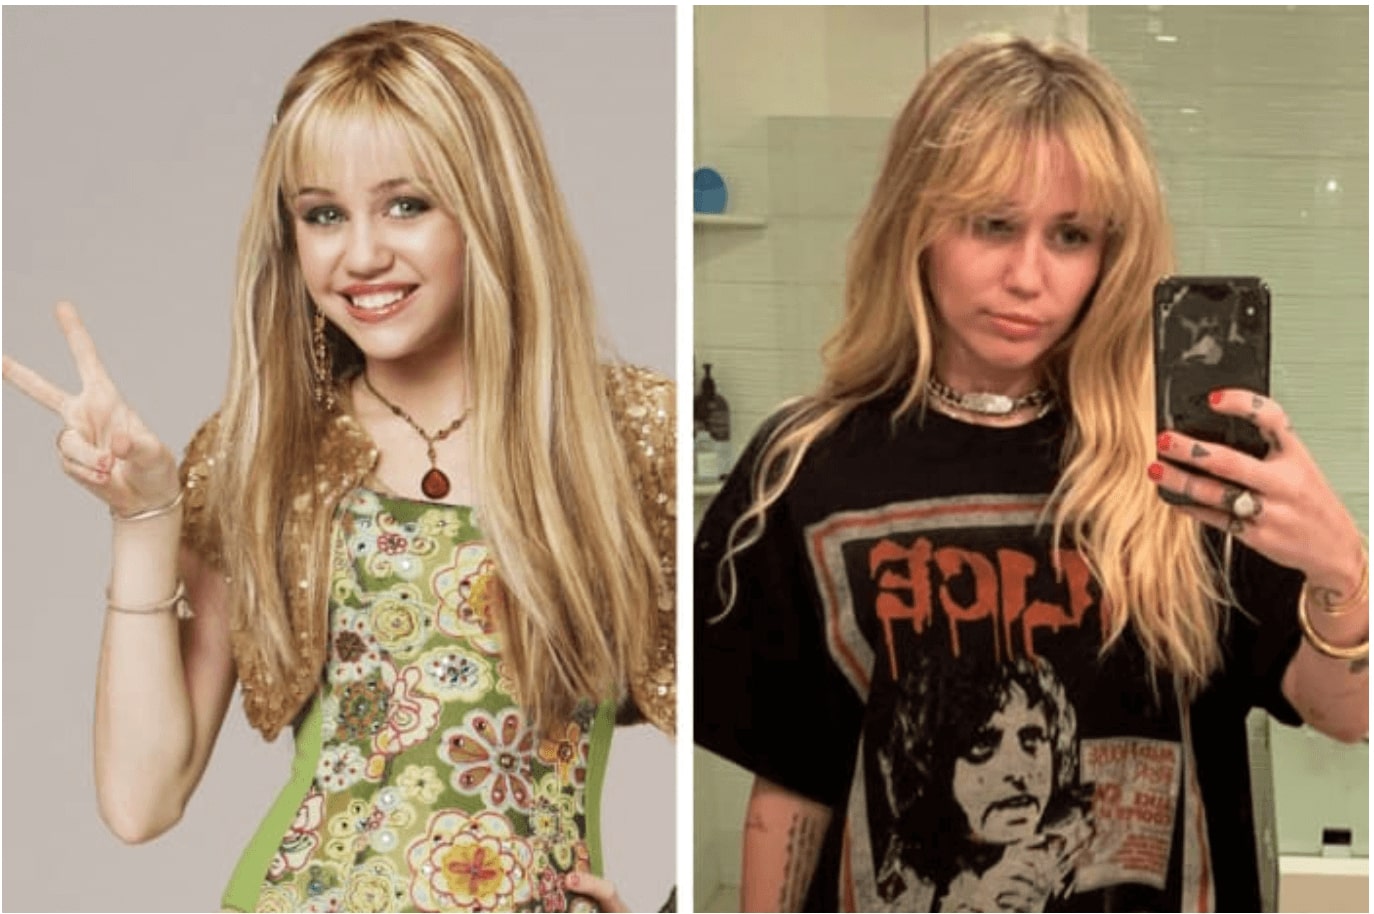 Miley Cyrus elárulta, milyen válságba került a Hannah Montana után